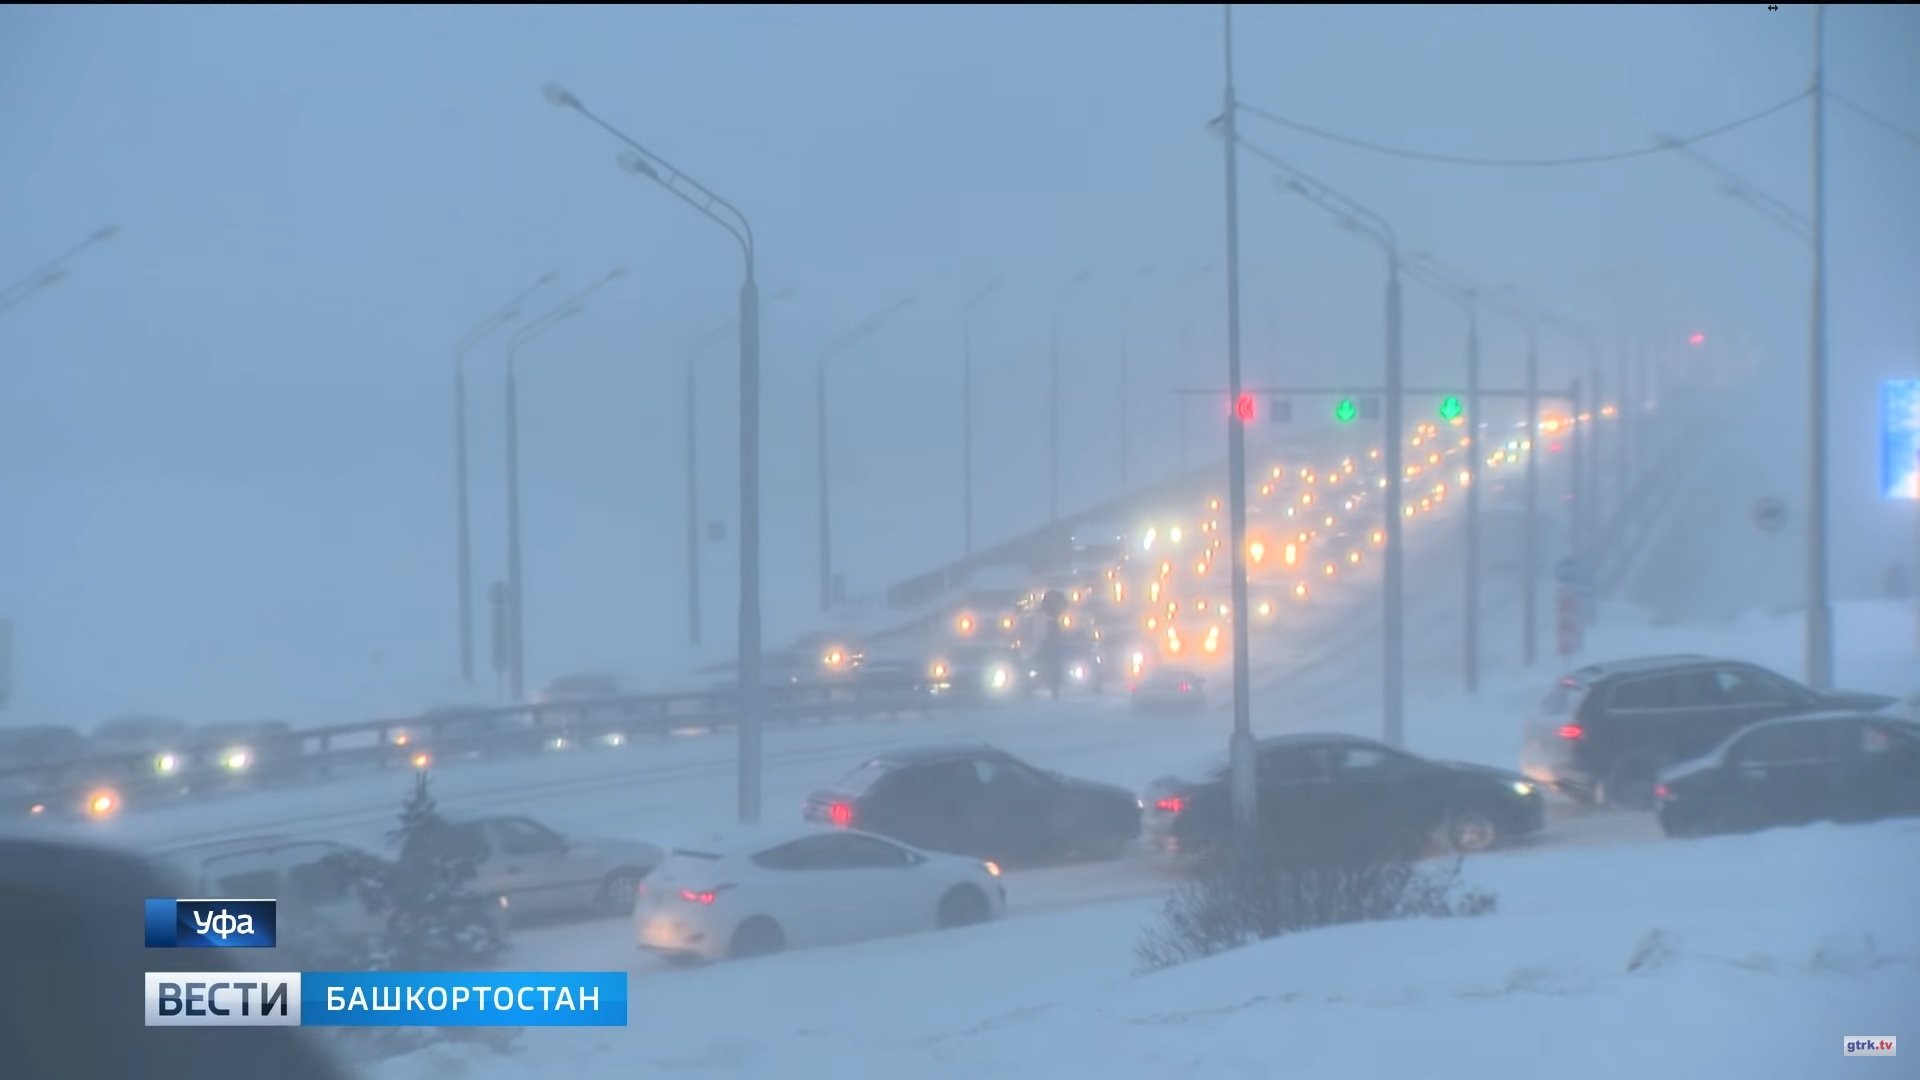 Уфа обстановка на сейчас. Метель Уфа. Снегопад в Уфе. Метели (Башкирия). Мурманск снег заносы на дорогах.